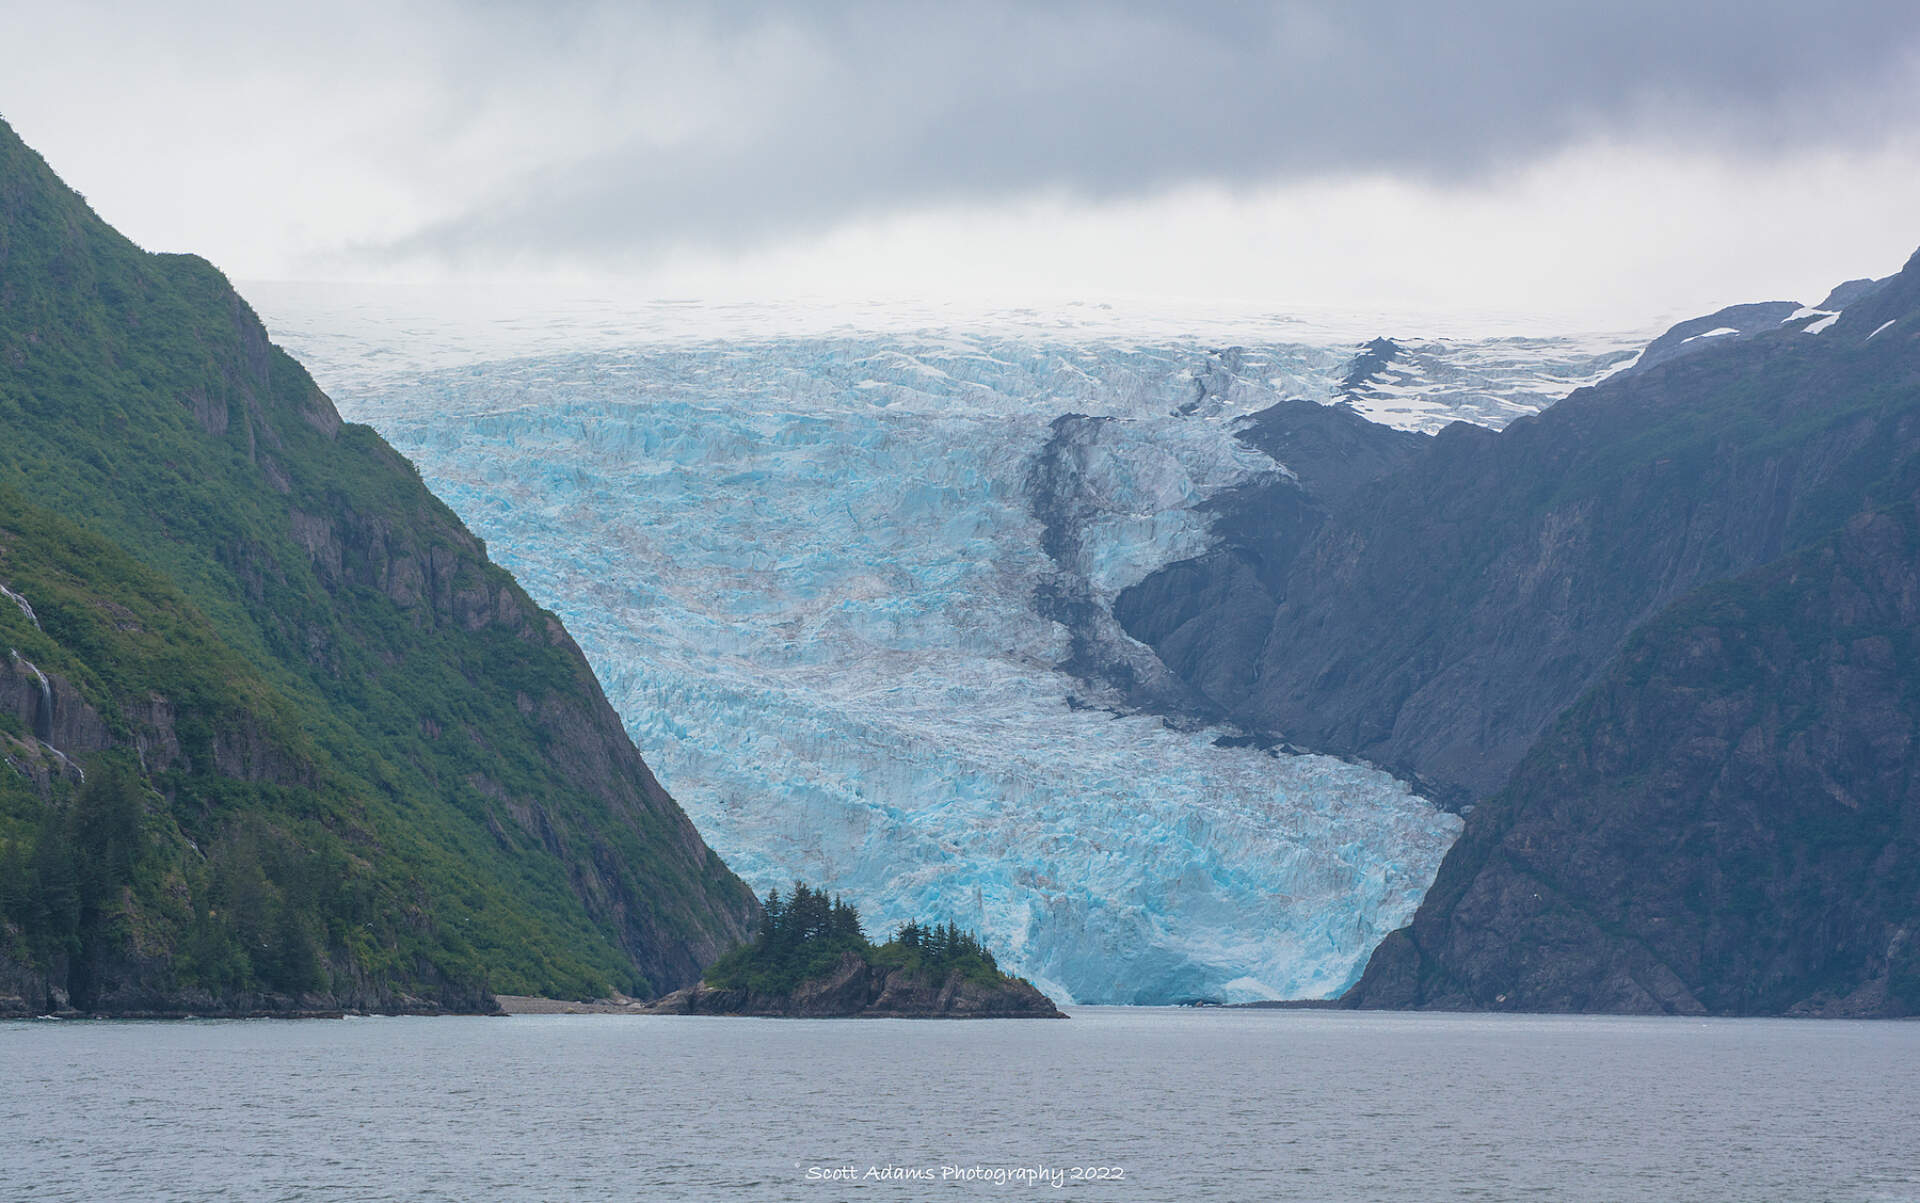 A glacier meets the ocean in Kenai Fjords National Park, Alaska.